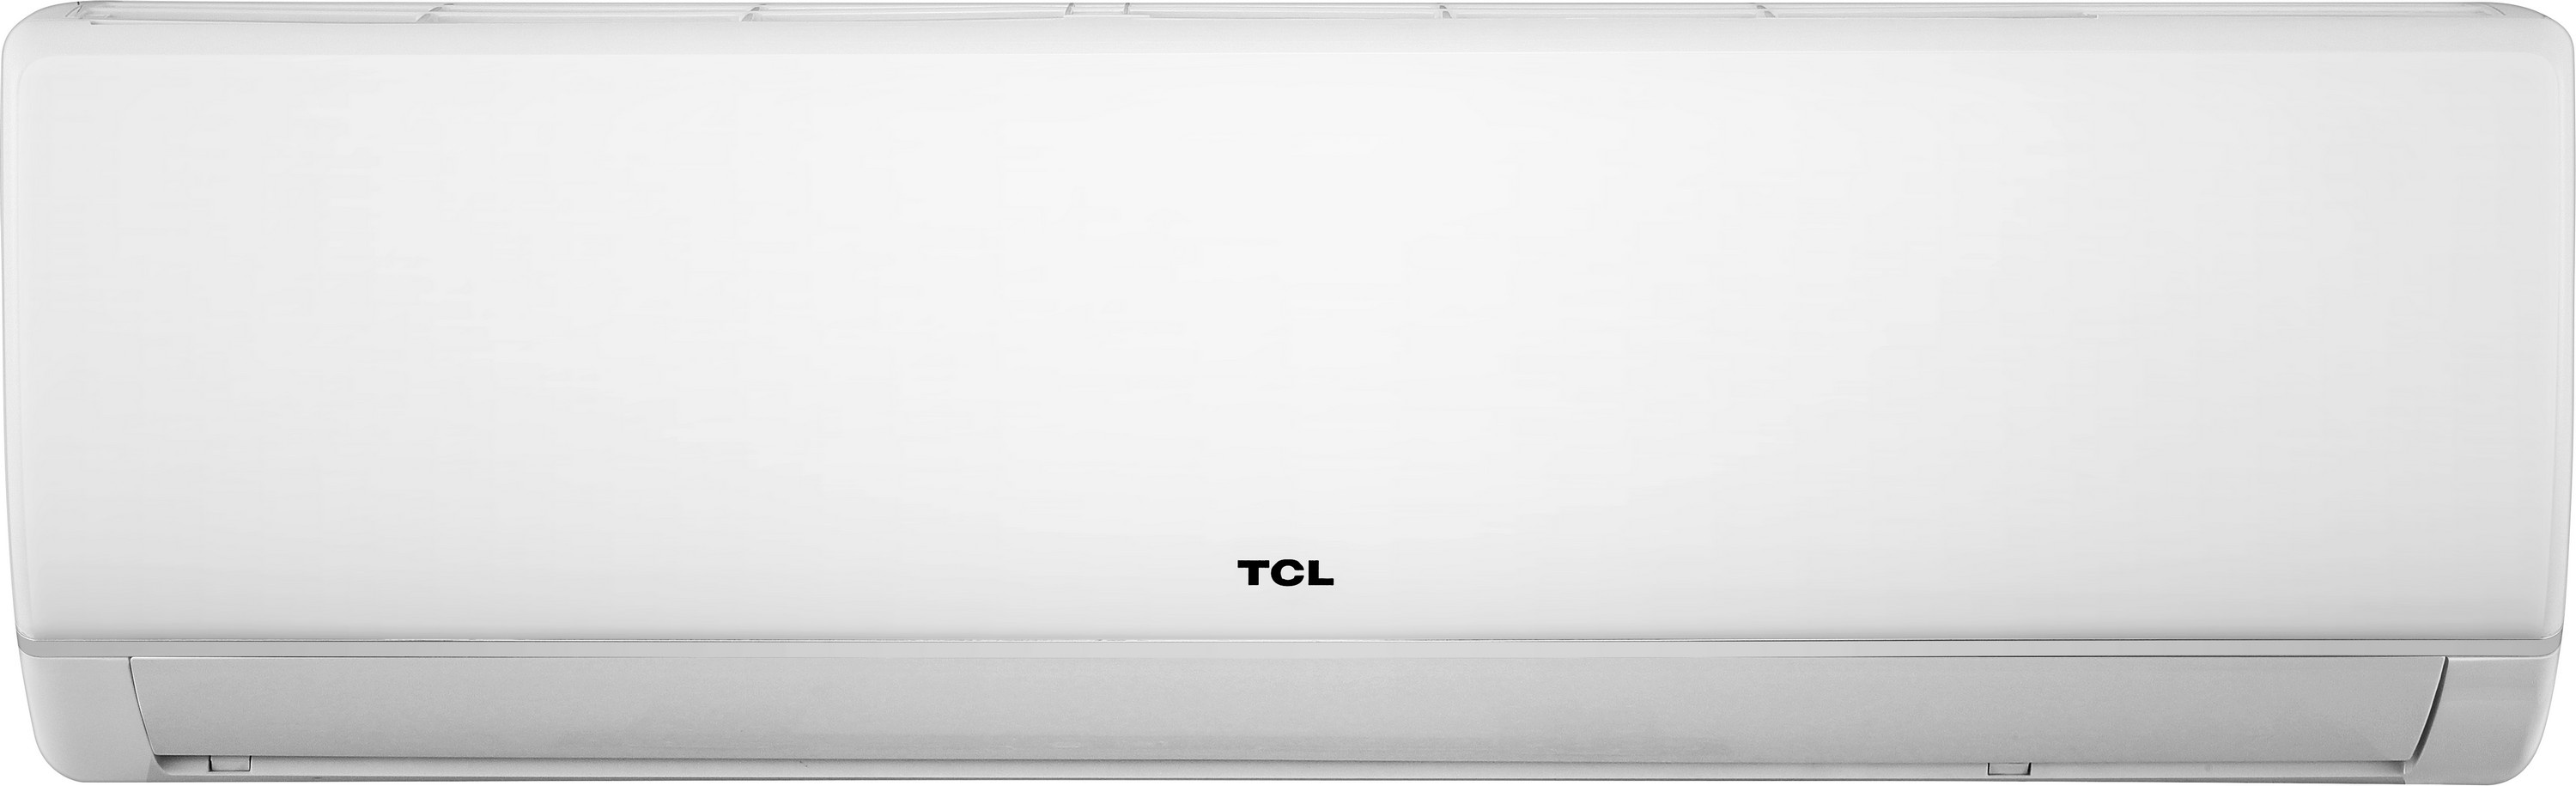 Кондиционер сплит-система TCL Miracle Inverter TAC-18CHSA/VB цена 19388.00 грн - фотография 2